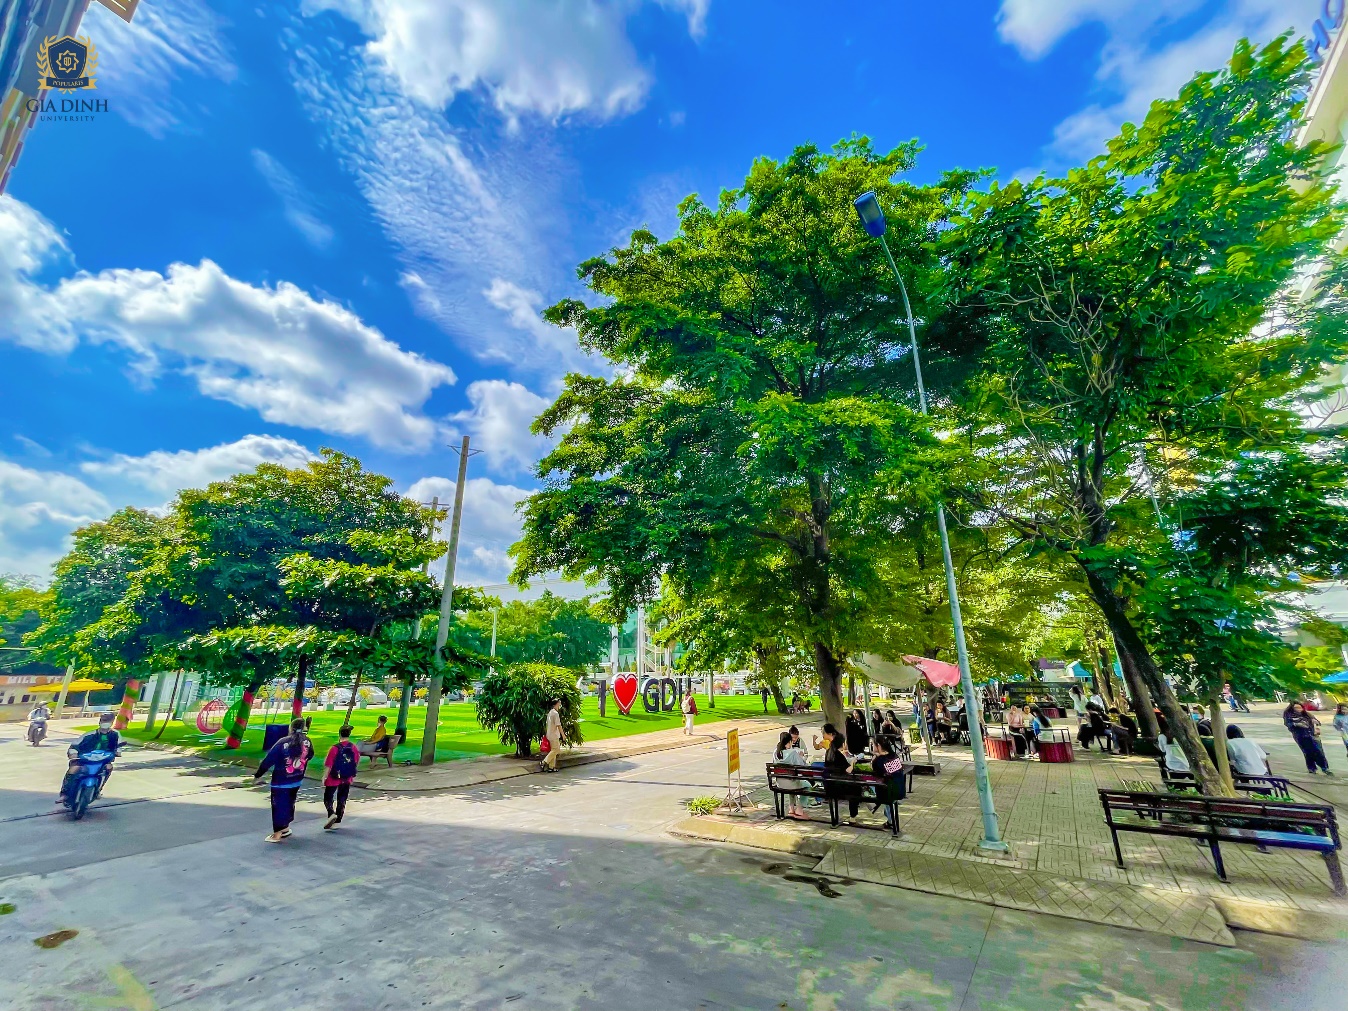 Khuôn viên trường rợp bóng cây, tạo không gian xanh mát cho sinh viên

